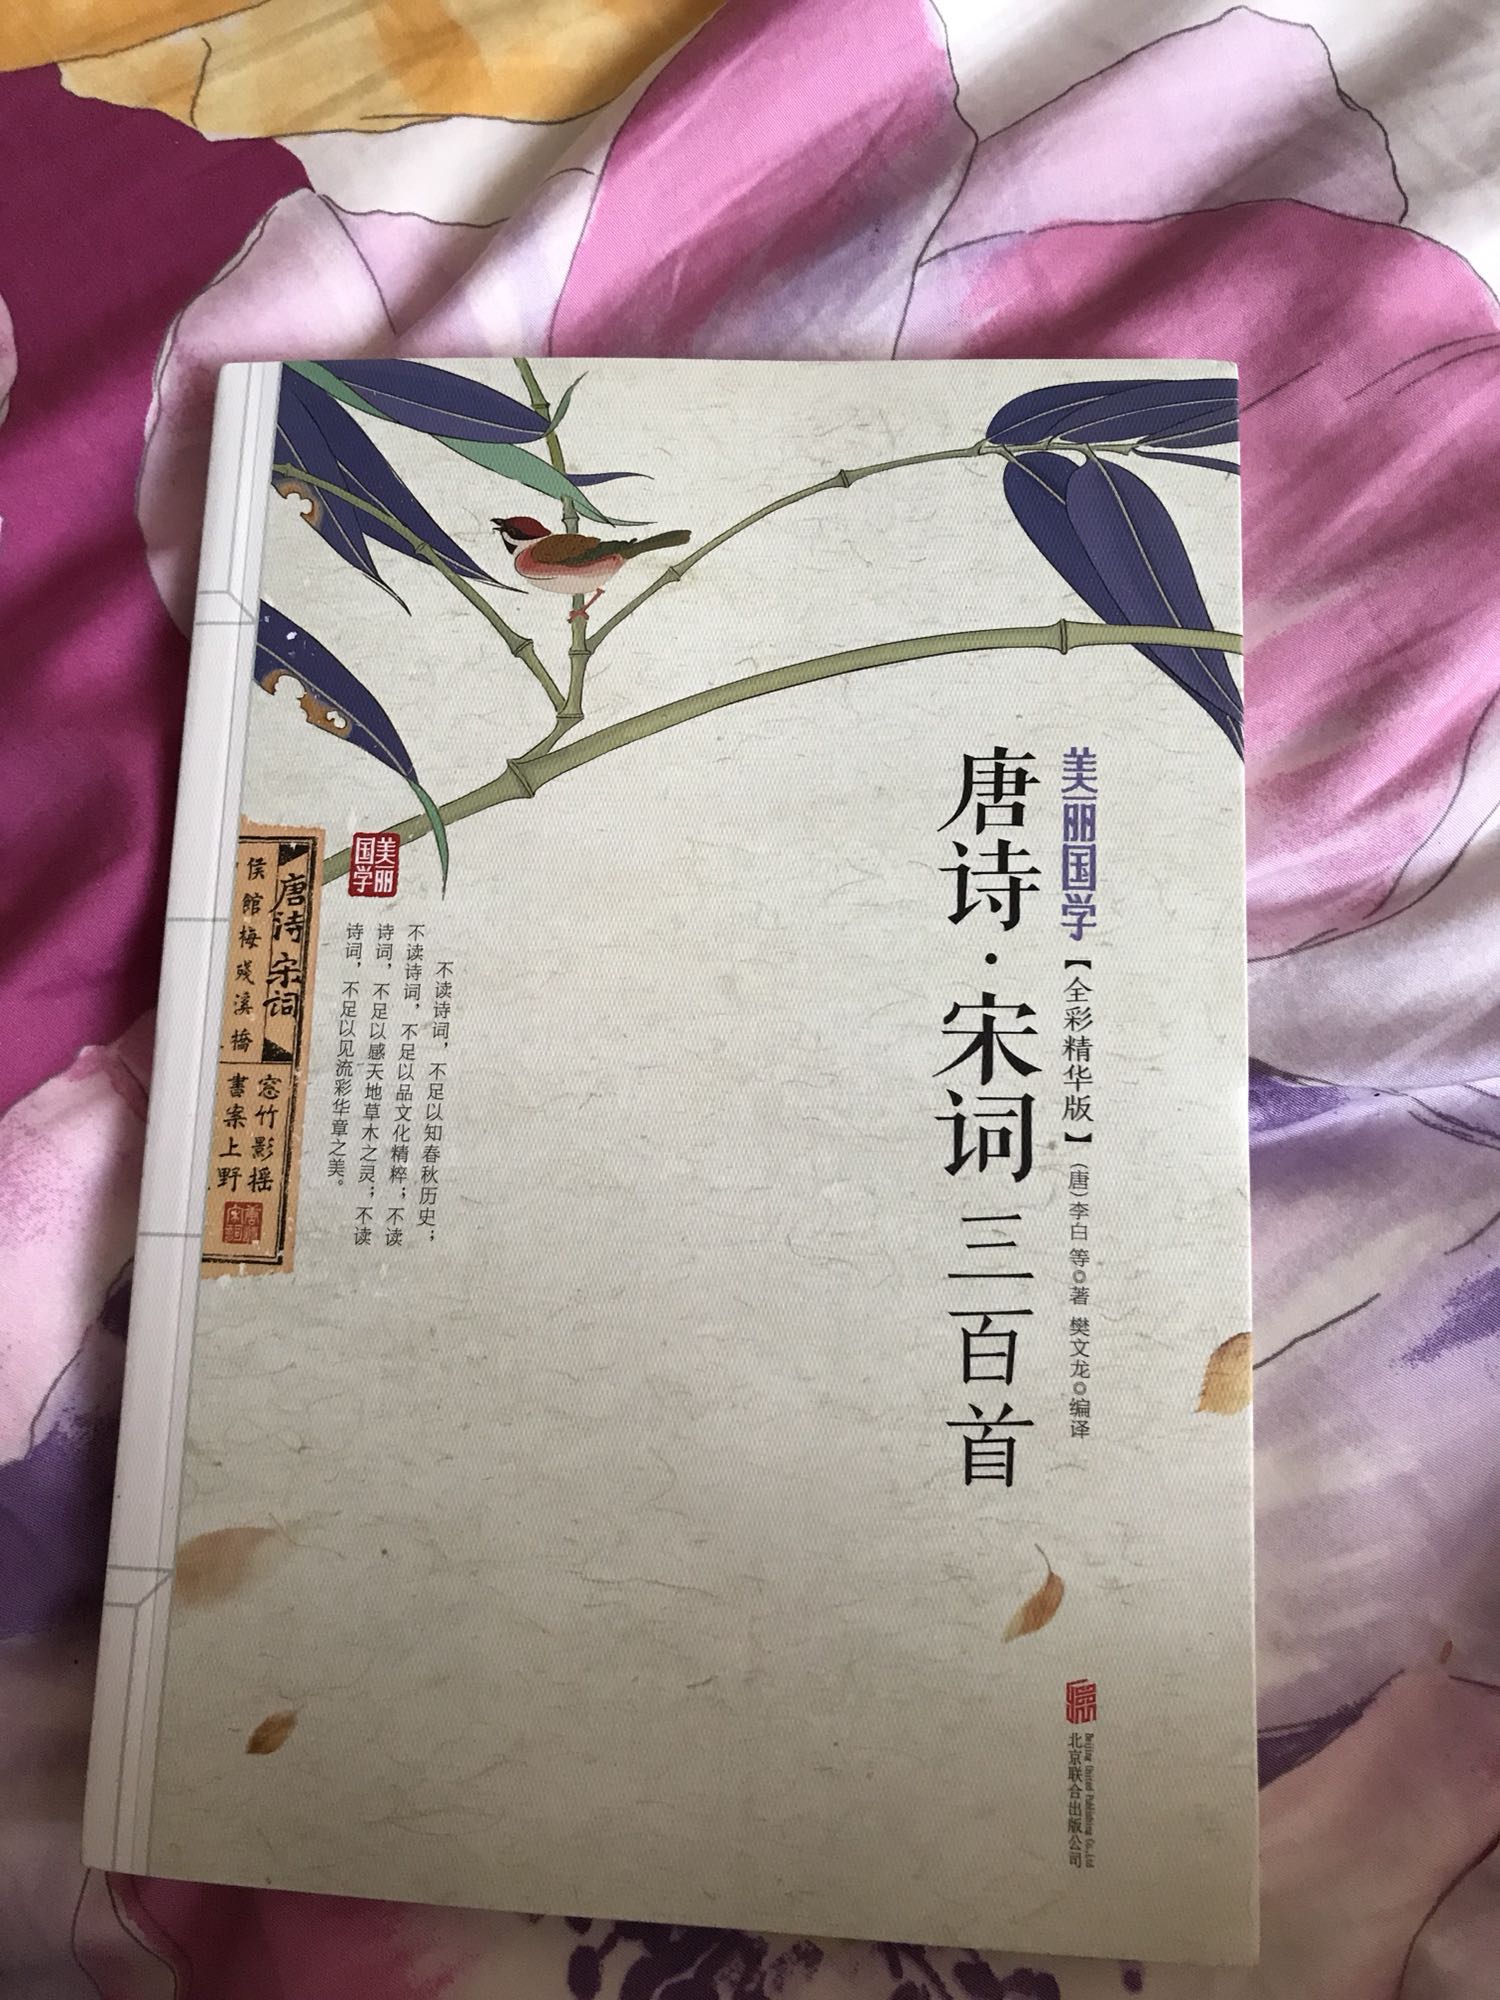 美丽的中国故事，绚丽的中国文化，非常棒的一套书，印刷质量也很好！